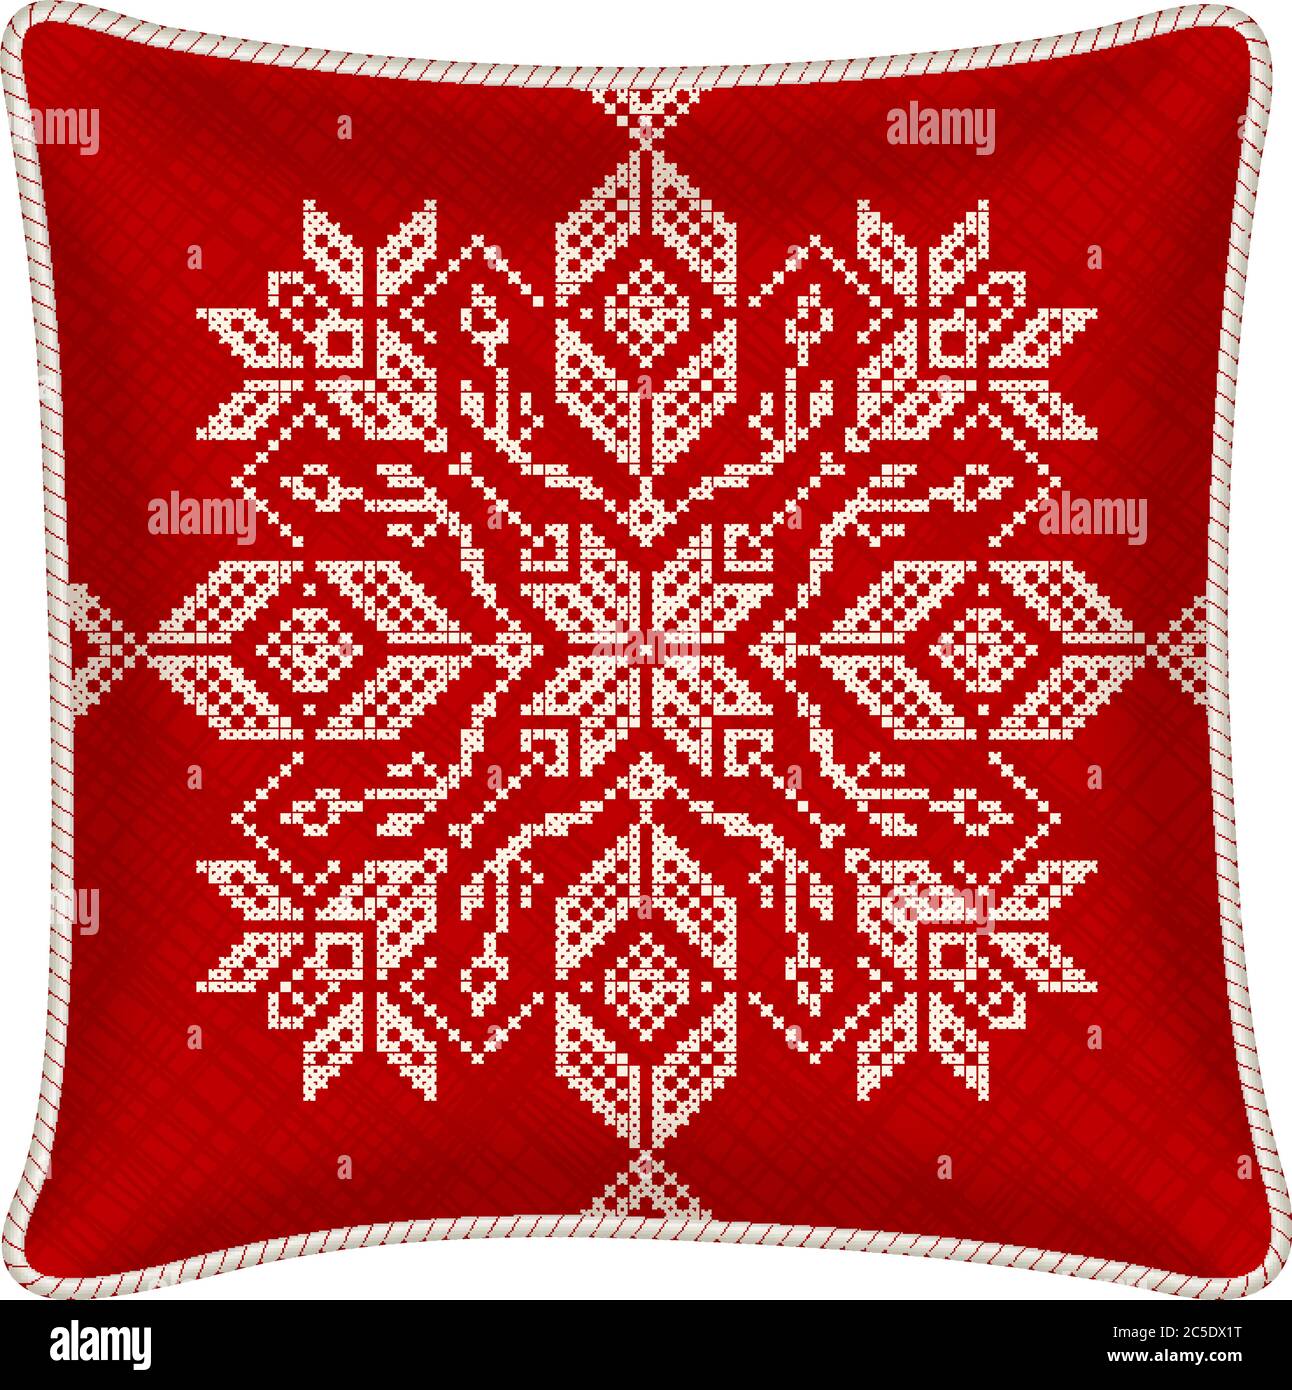 Vektor-Kissen mit besticktem Kissenbezug. Traditionelle skandinavische  Ornament für Weihnachten - leuchtend rote und weiße Schneeflocken im  Kreuzstich Muster Stock-Vektorgrafik - Alamy